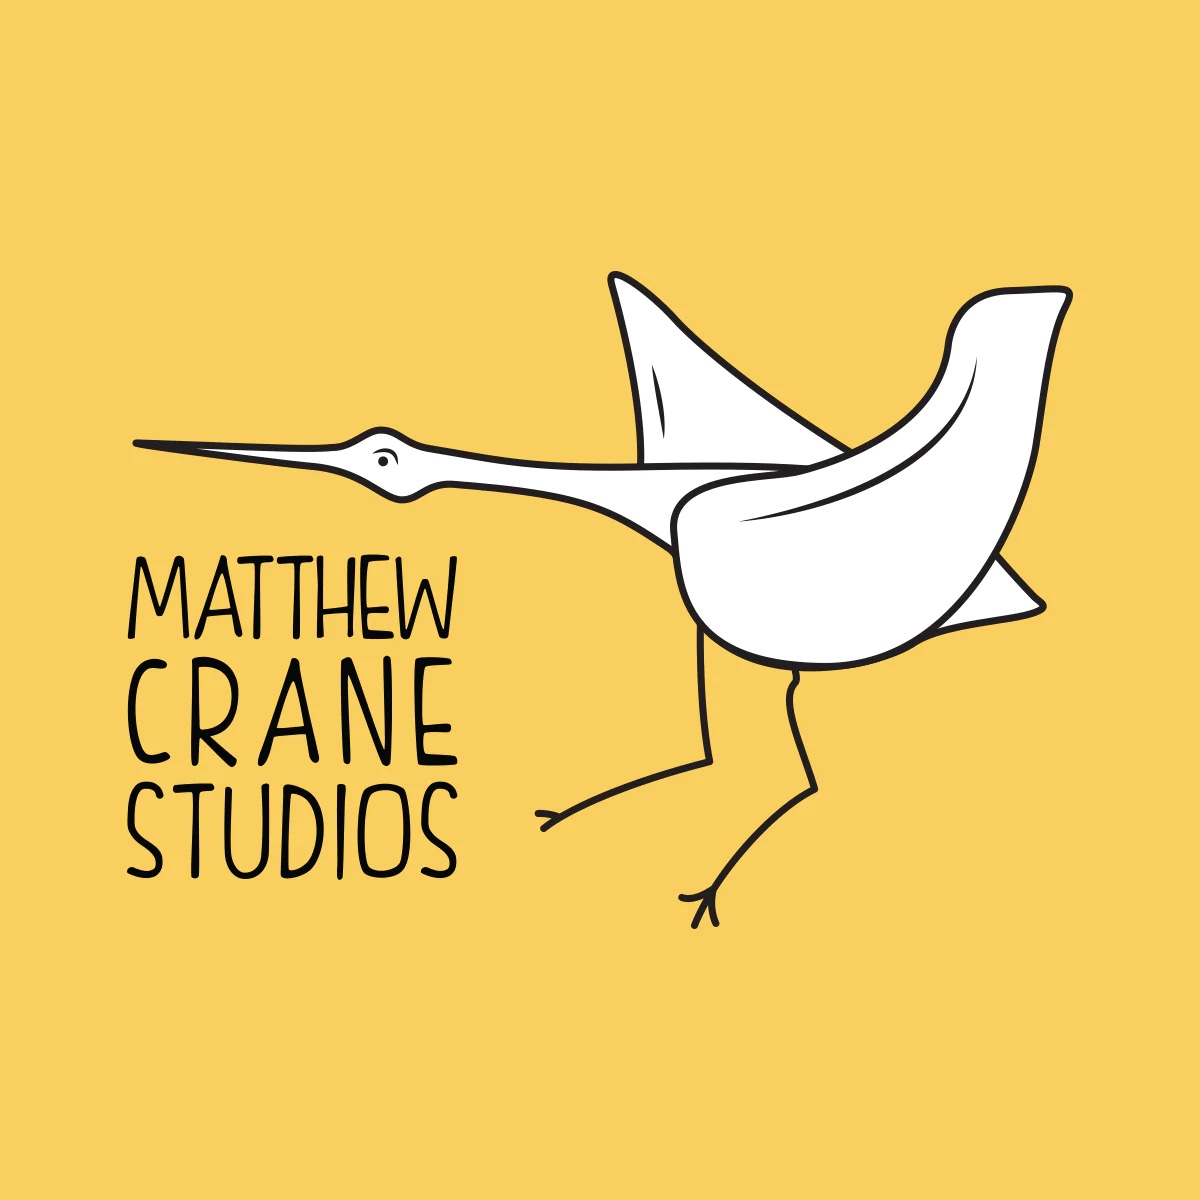 Matthew Crane Studios